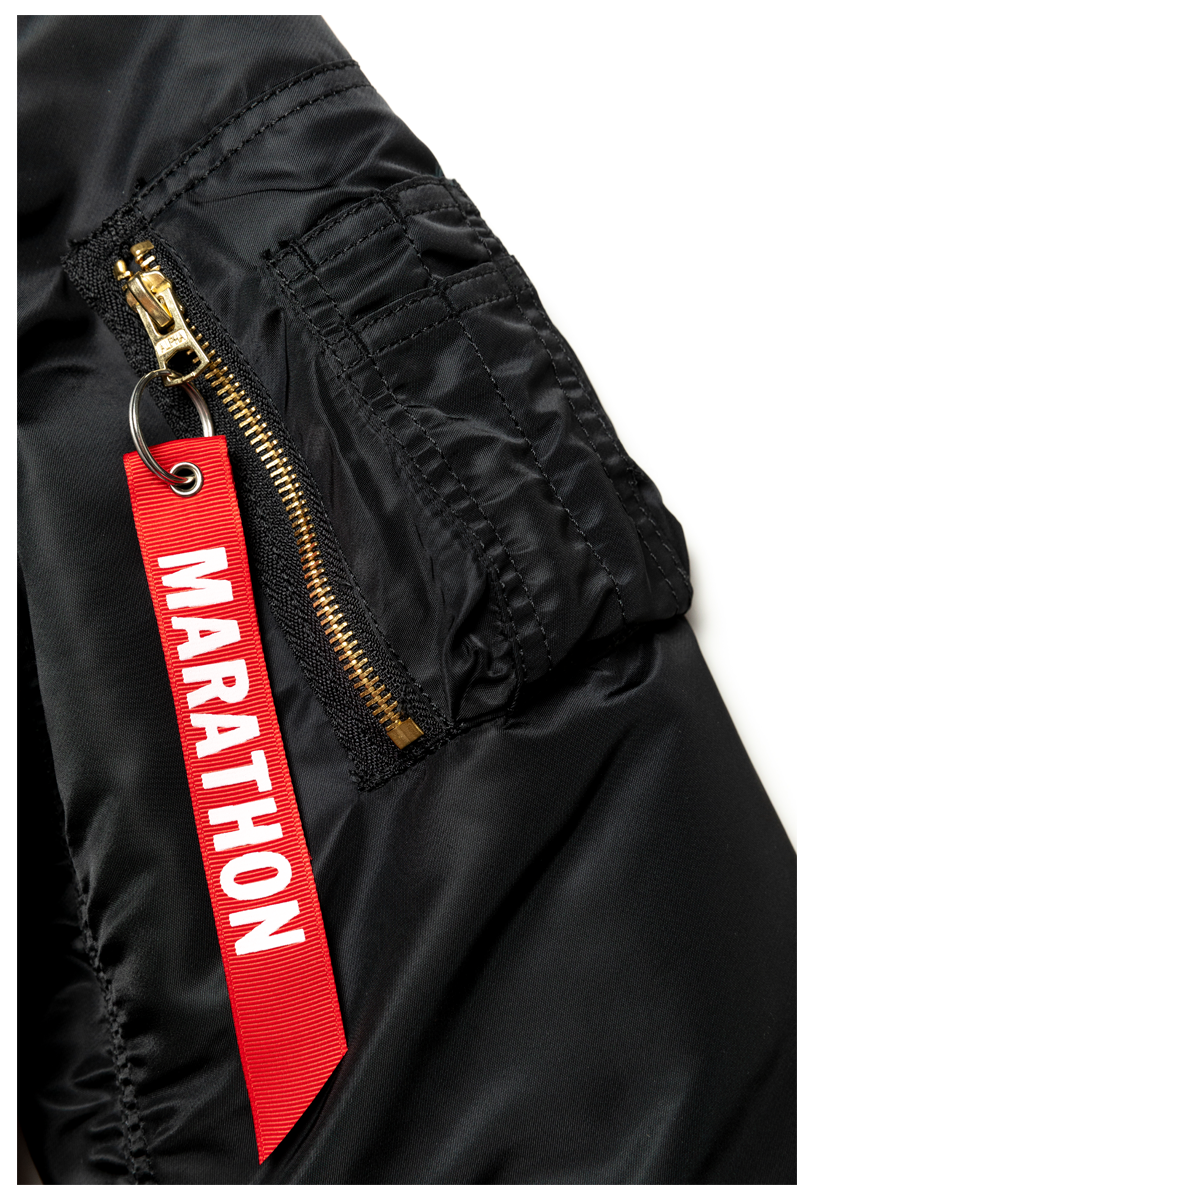 Crenshaw Bomber Jacket - Black/Black- The Marathon Clothing